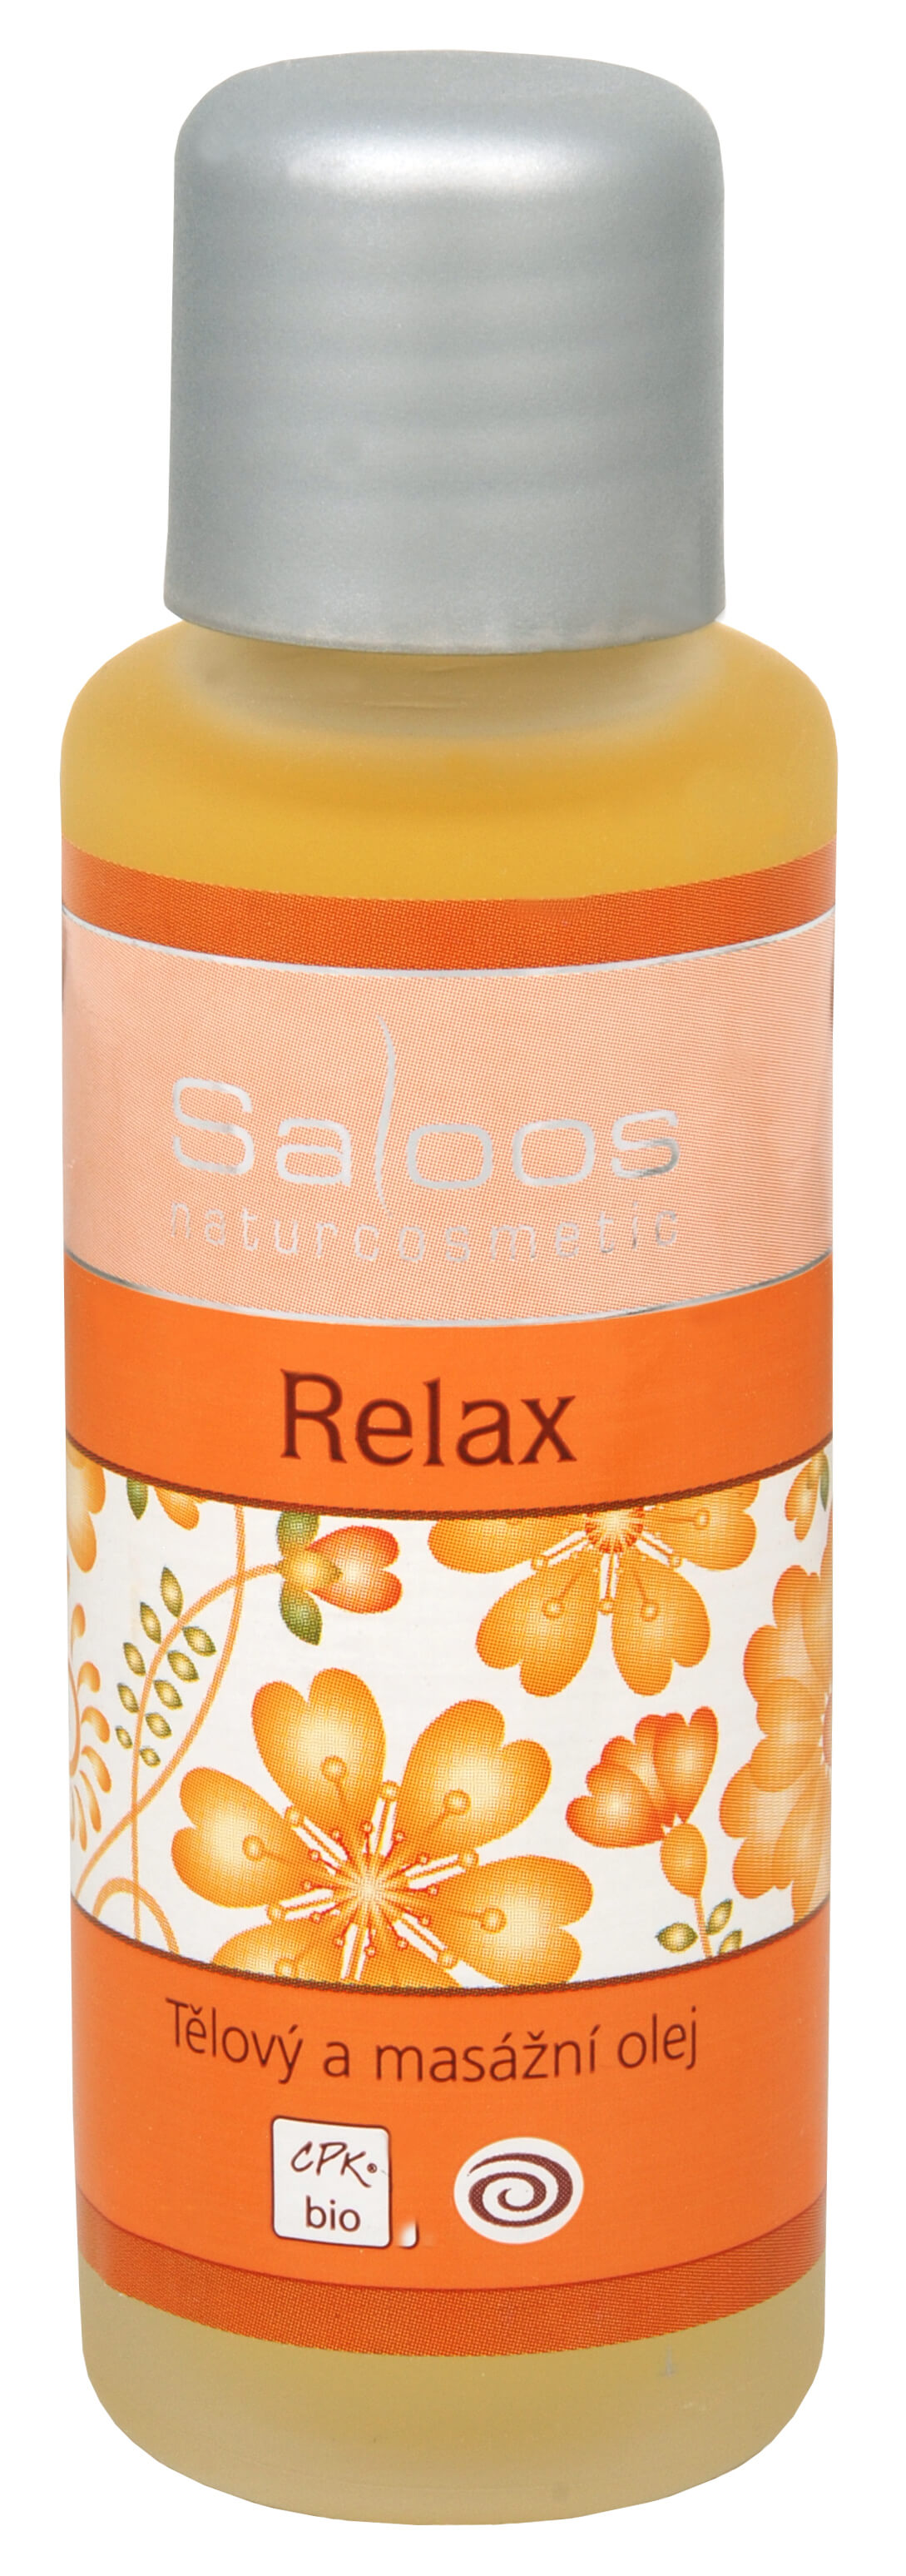 Saloos Bio telový a masážny olej - Relax 125 ml + 2 mesiace na vrátenie tovaru